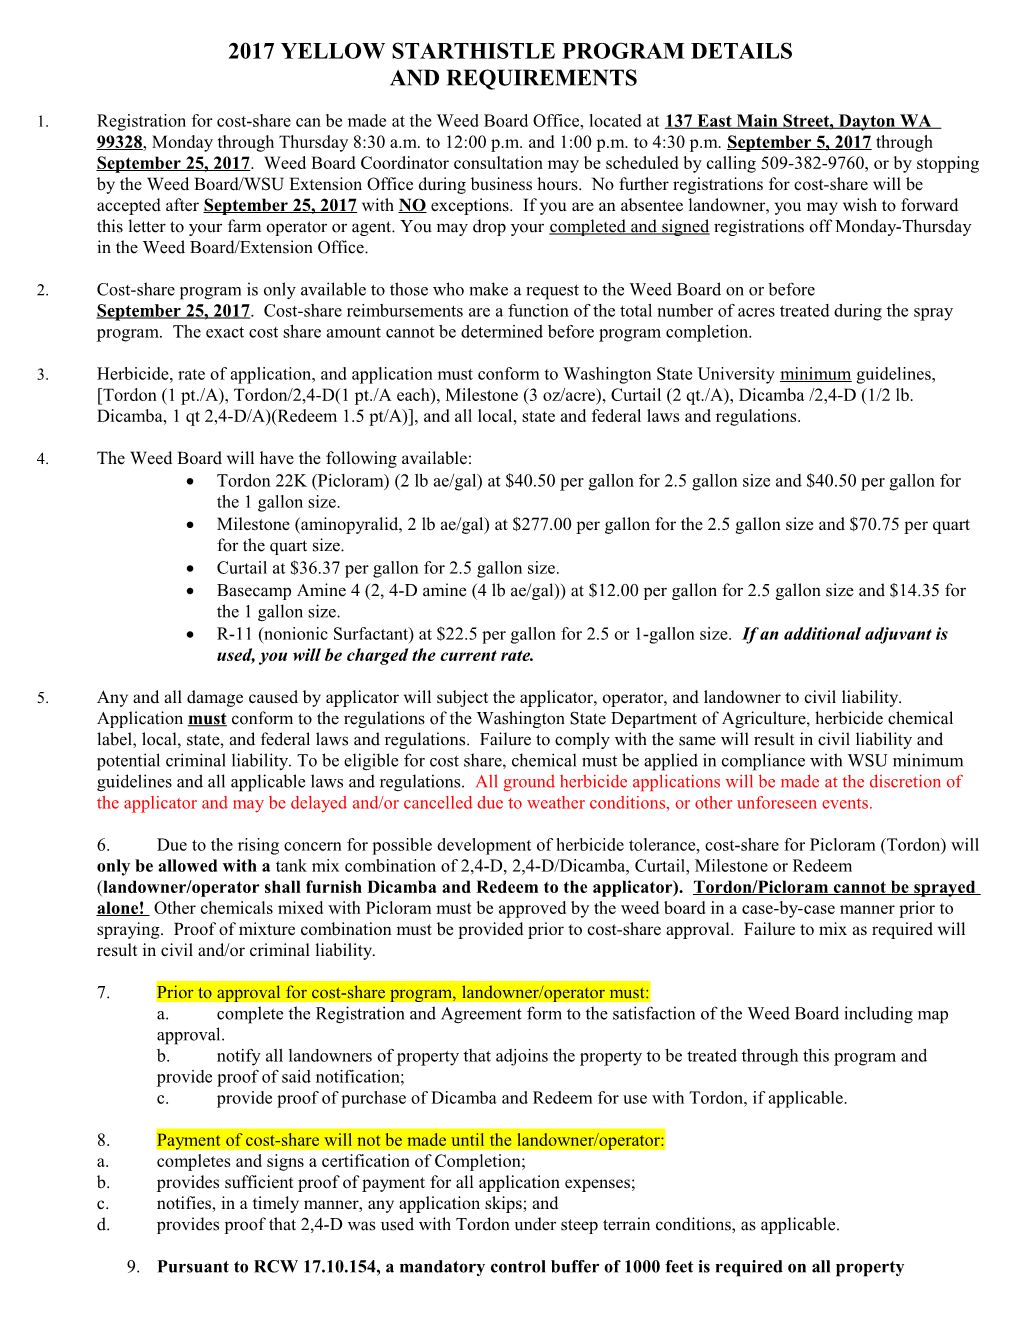 2003 Yellow Starthistle Program Details